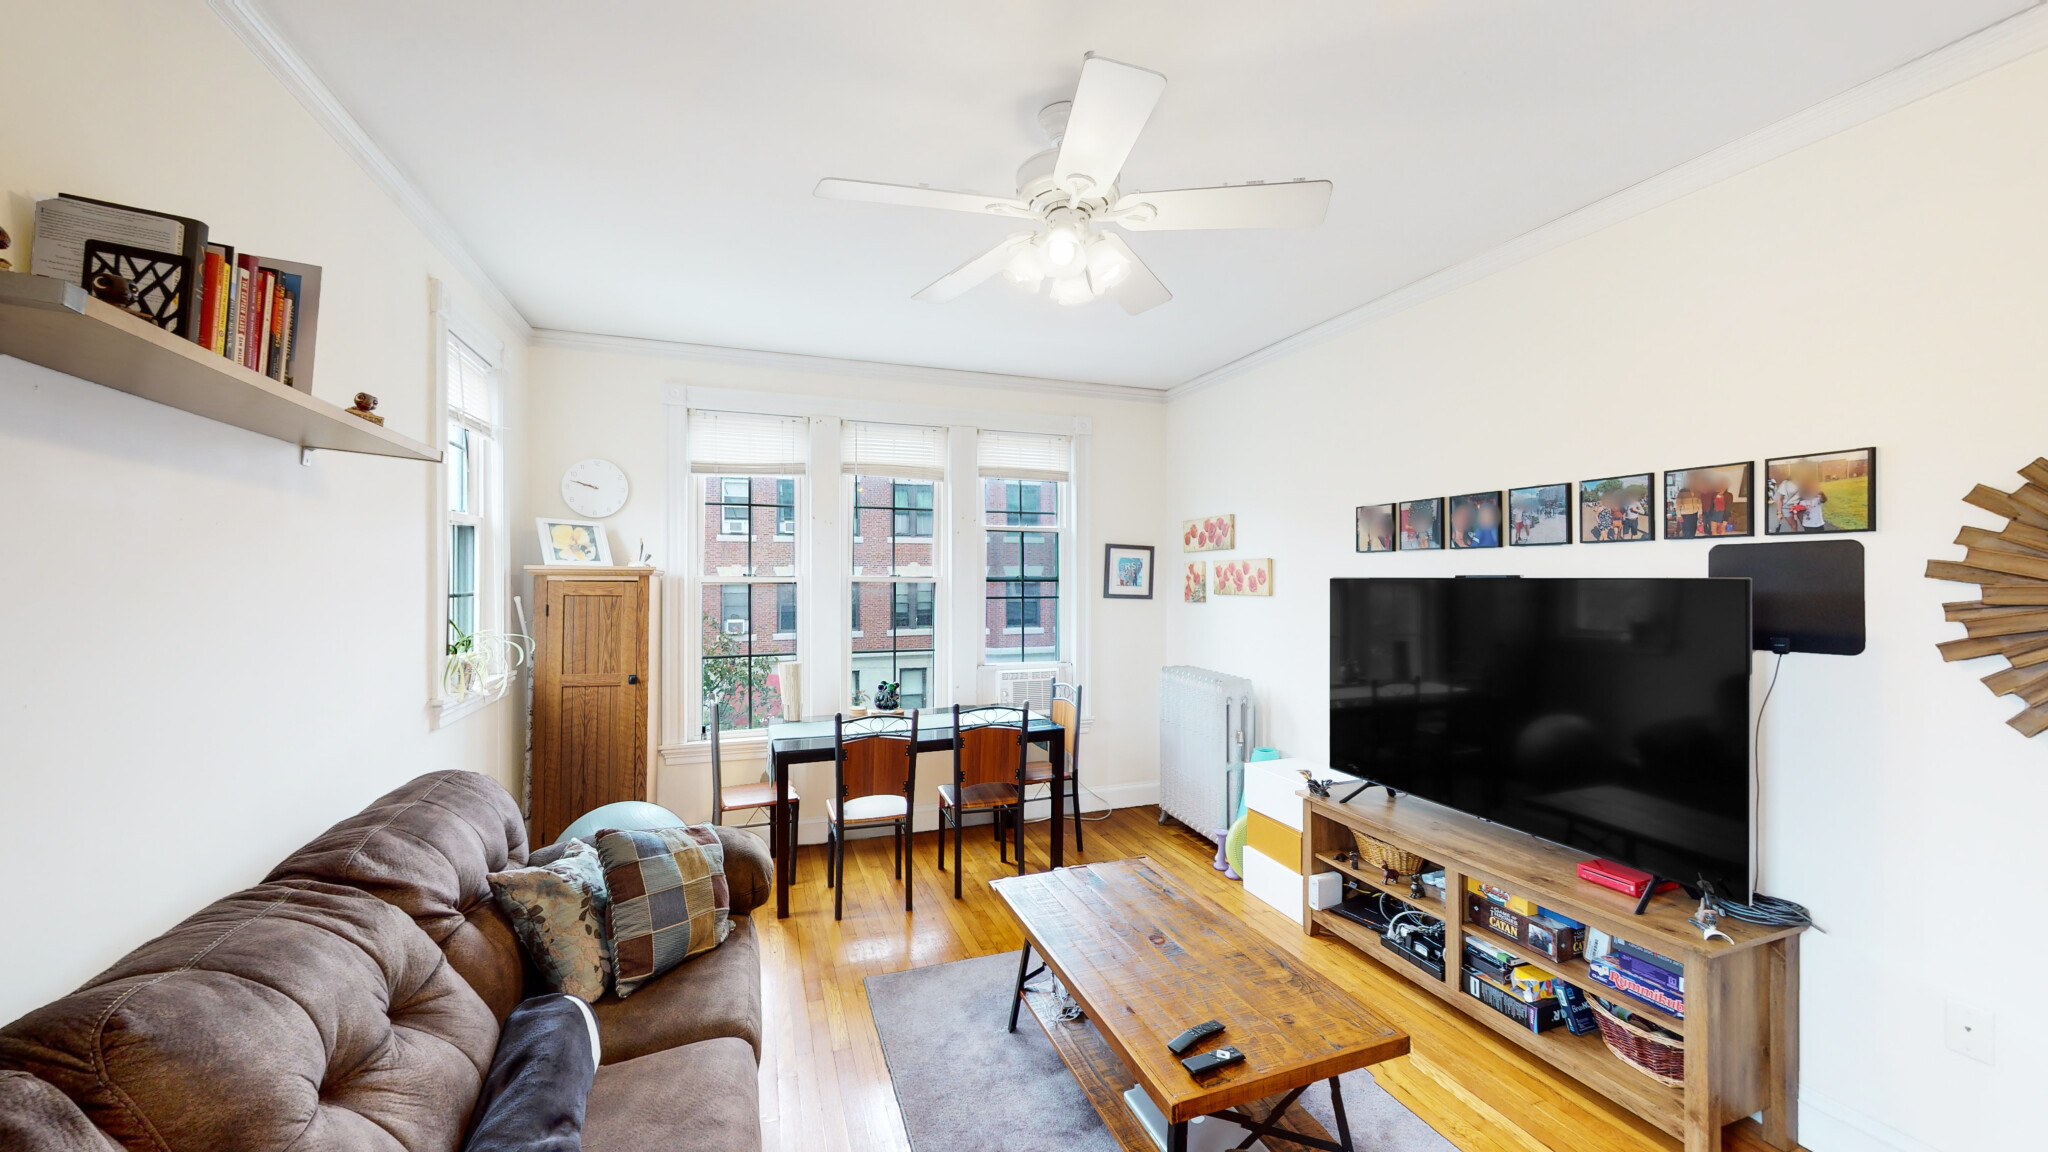 Photos of apartment on Gorham St.,Boston MA 02134